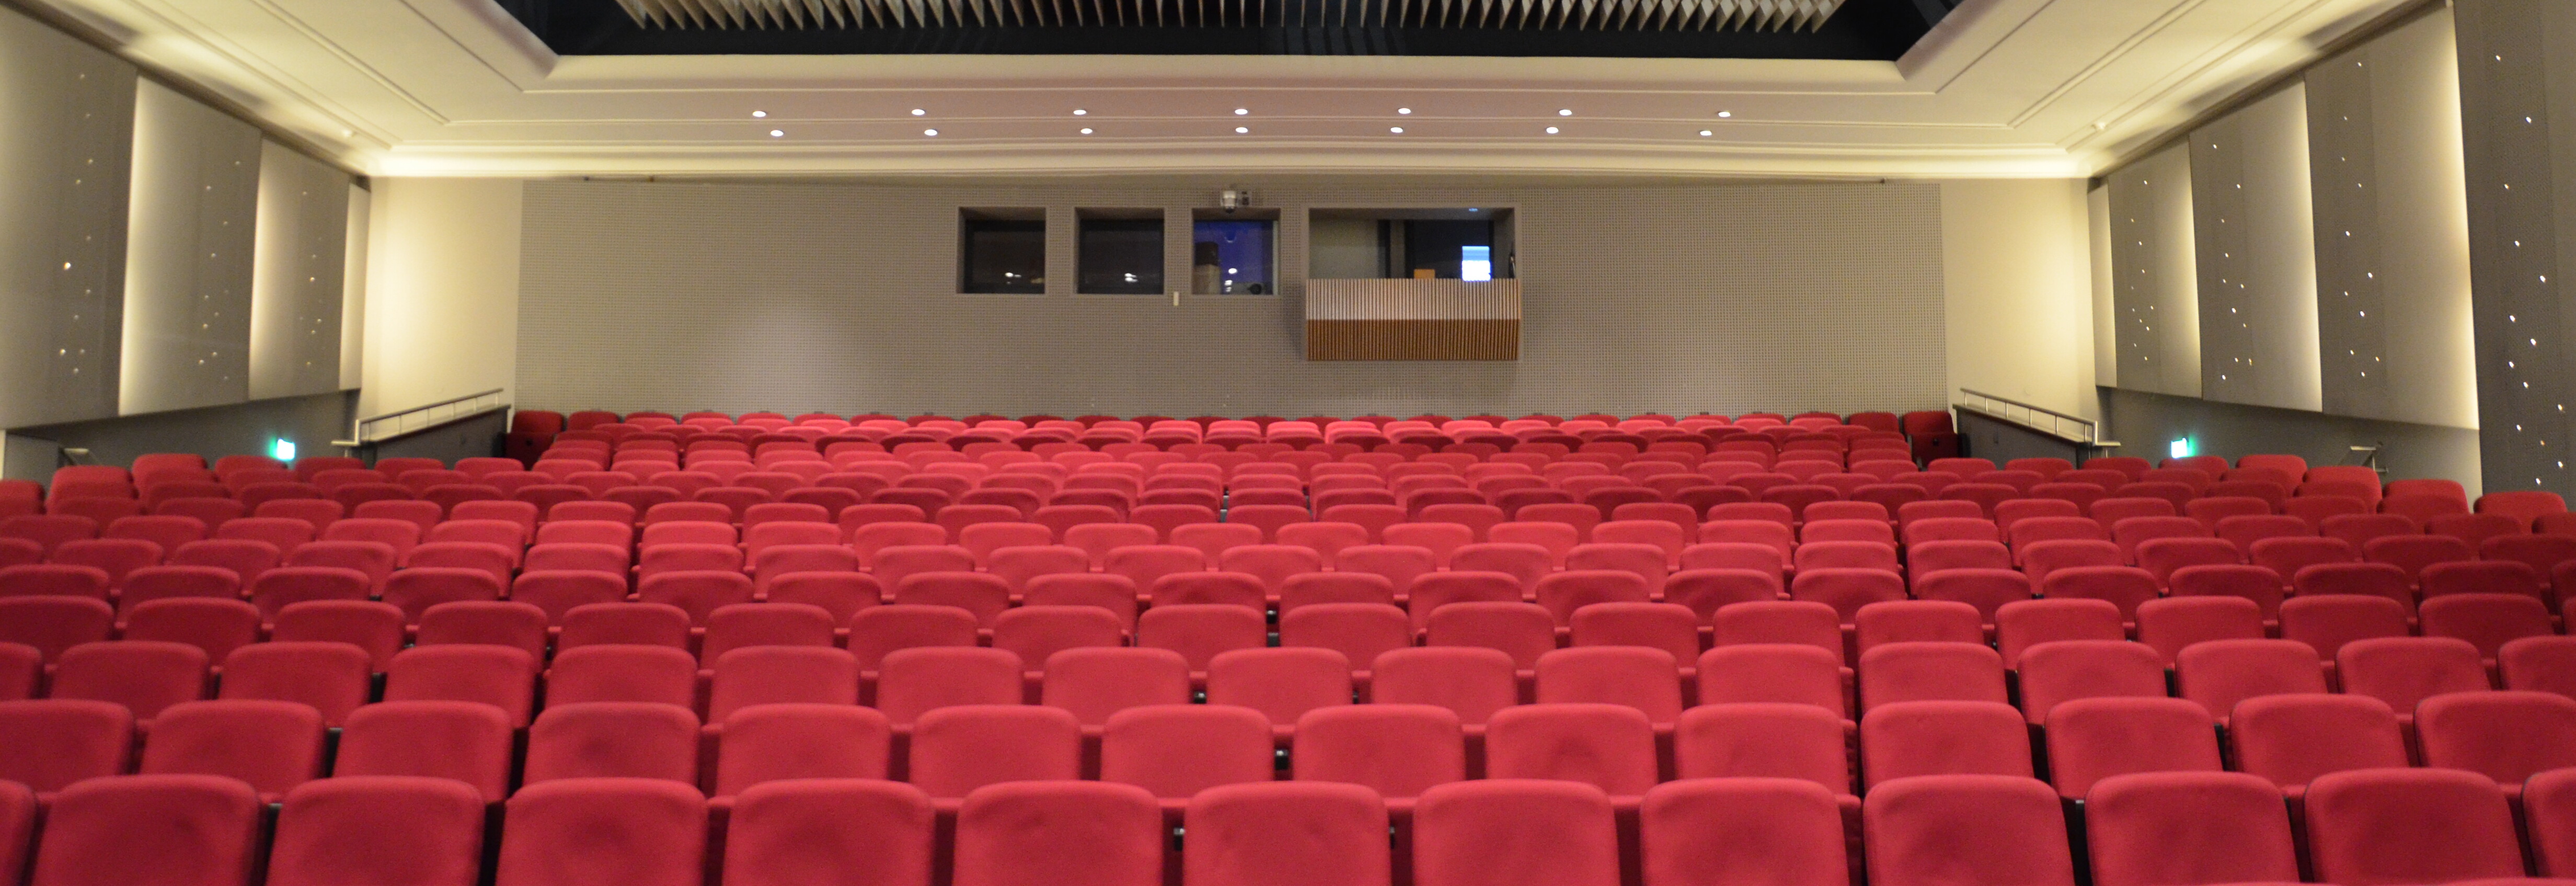 Innenansicht des Theaters Lüneburg: Blick auf leere rote Sitzreihen im Großen Haus